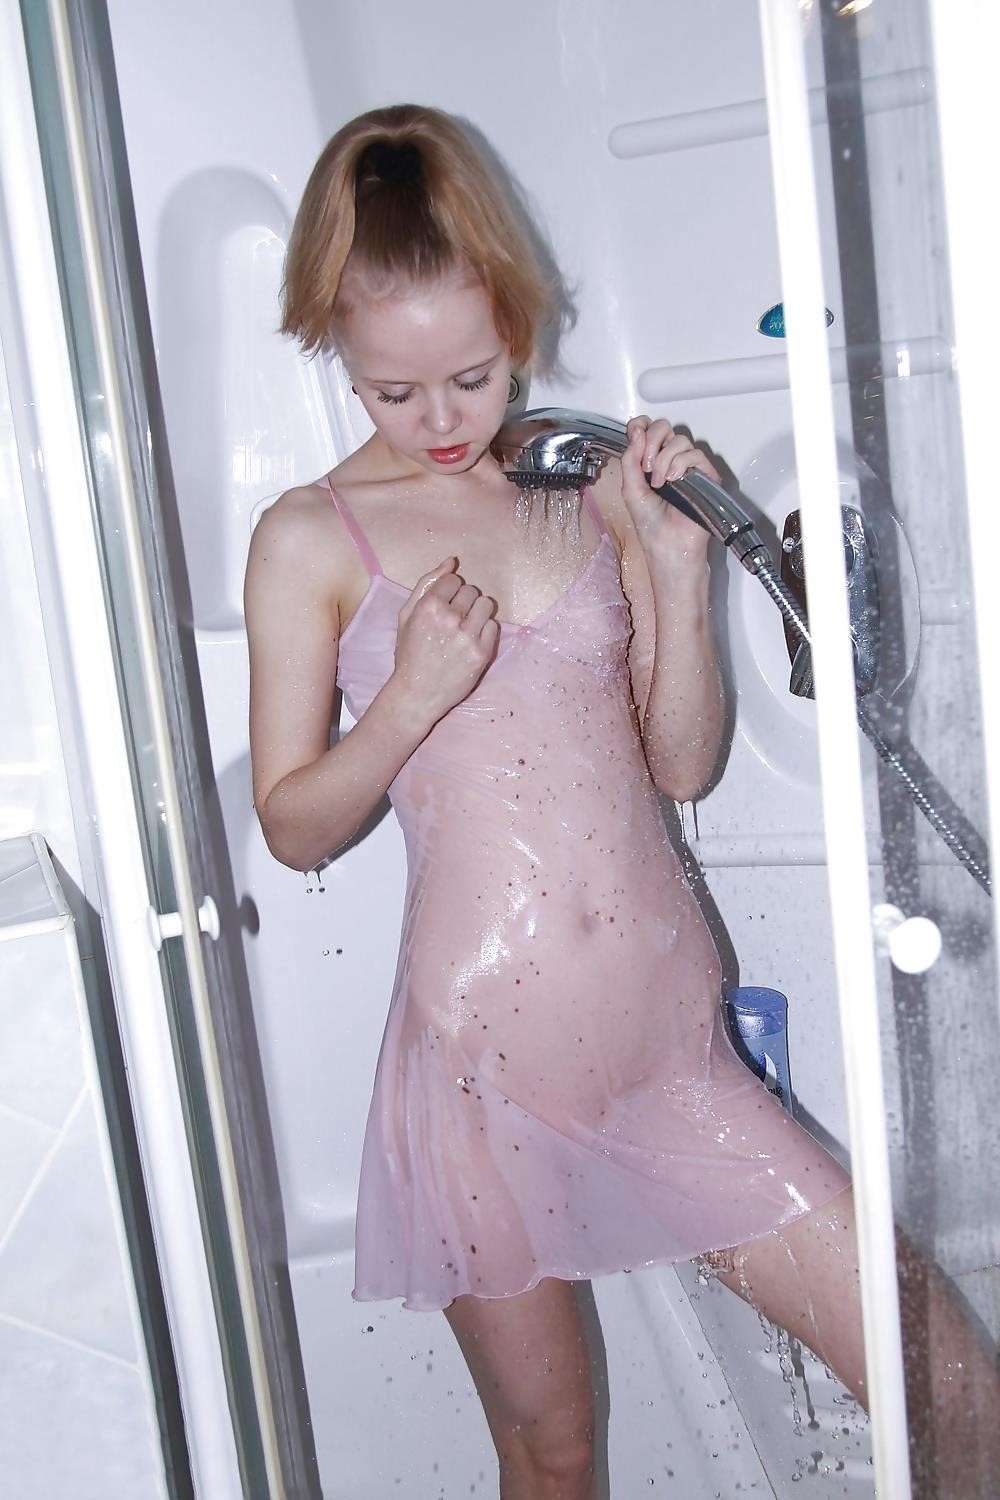 Shower nude selfie-5868